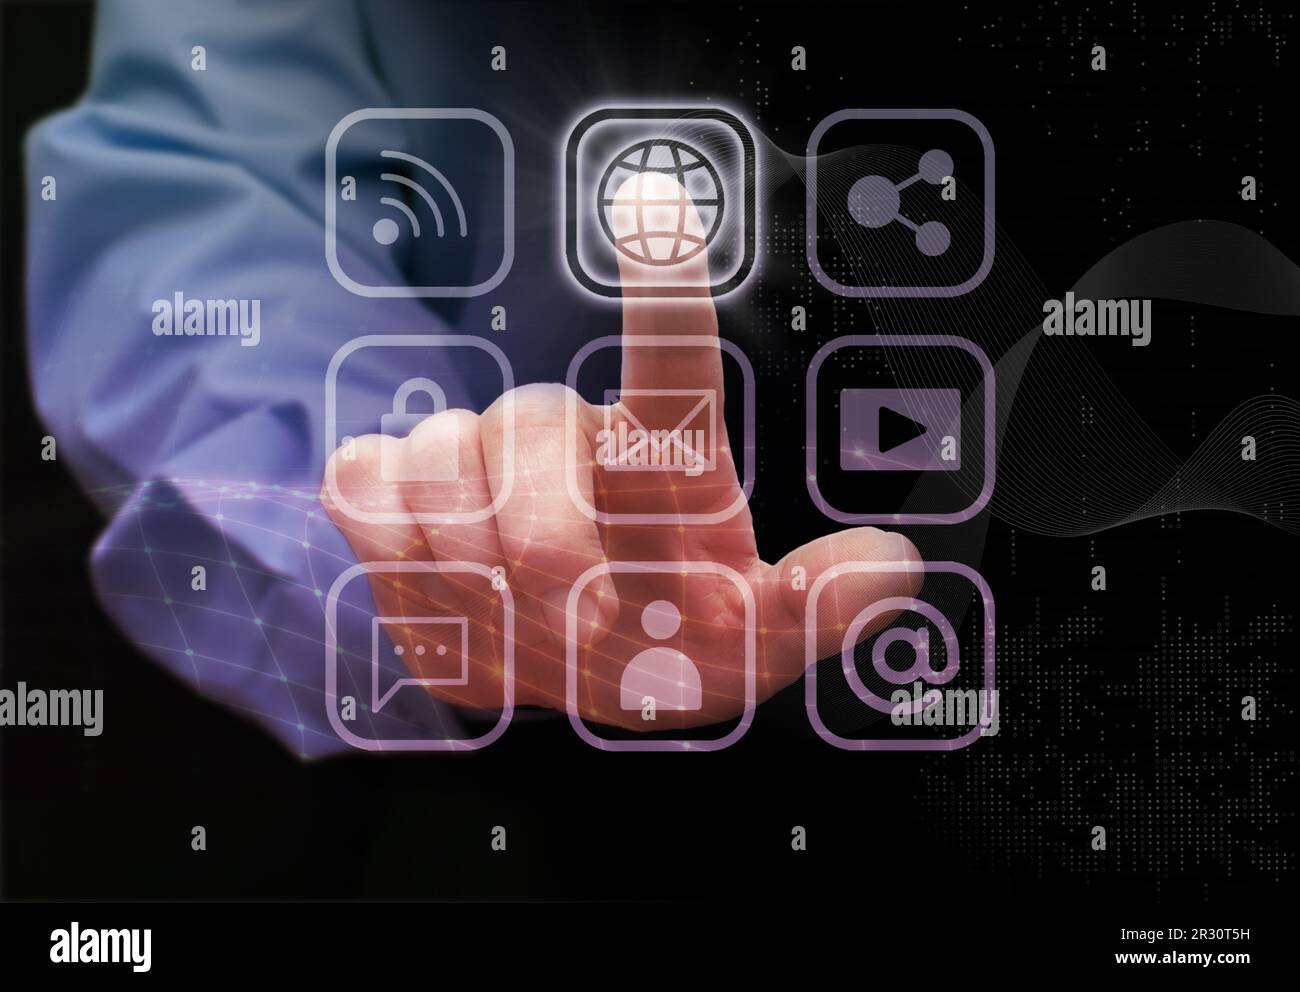 L'homme touche les icônes (hologramms) du stockage de données de la technologie Cloud, réseau, wi-fi, Internet mobile, réseaux sociaux, e-mails, stockage dans le cloud, multitemps Banque D'Images